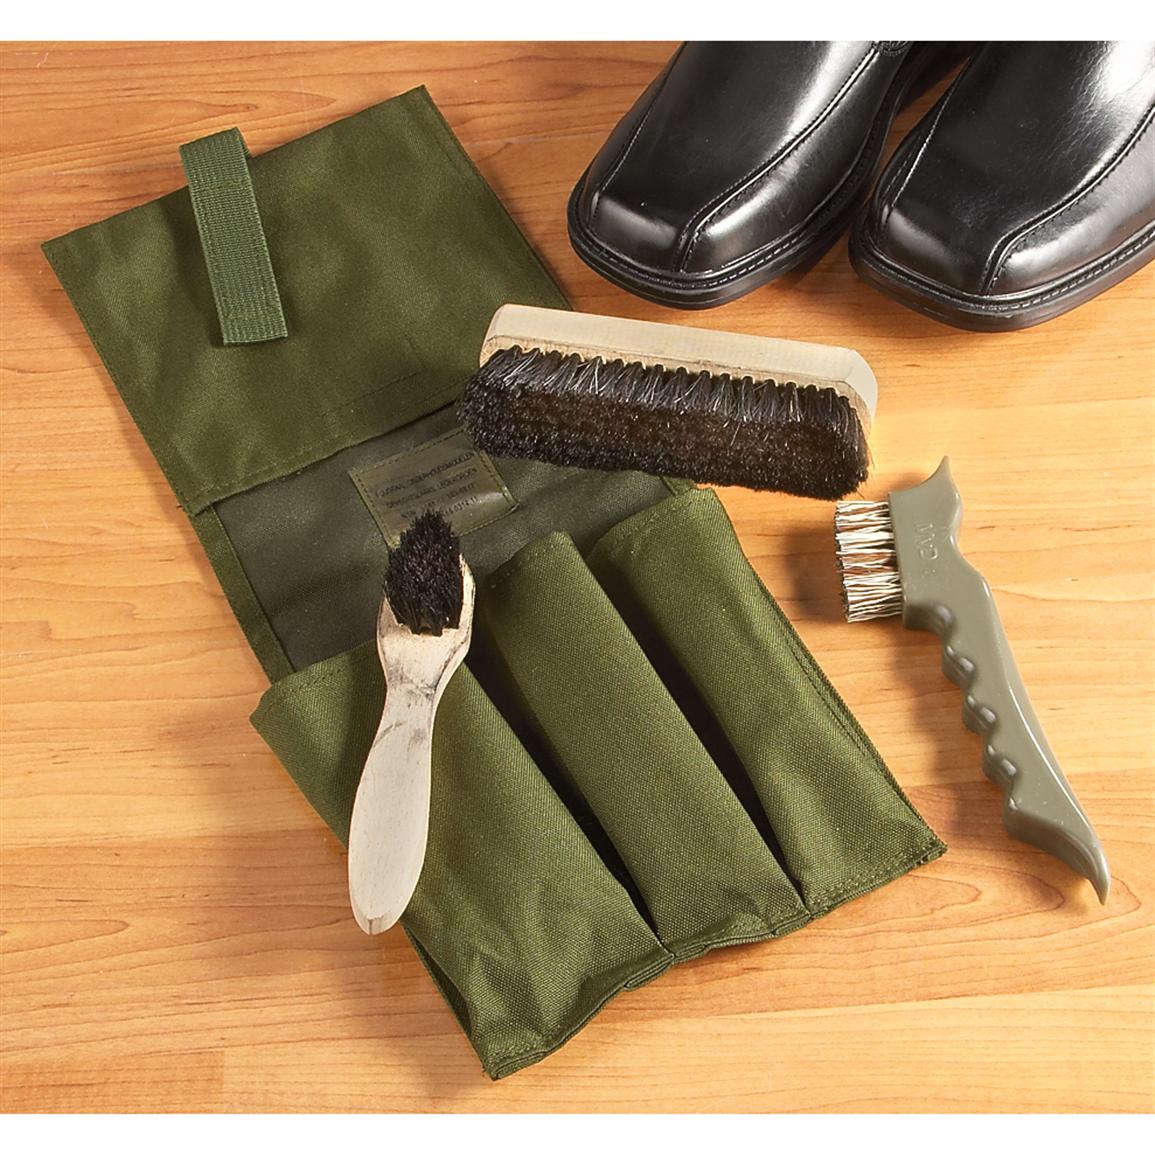 military shoe polish kit